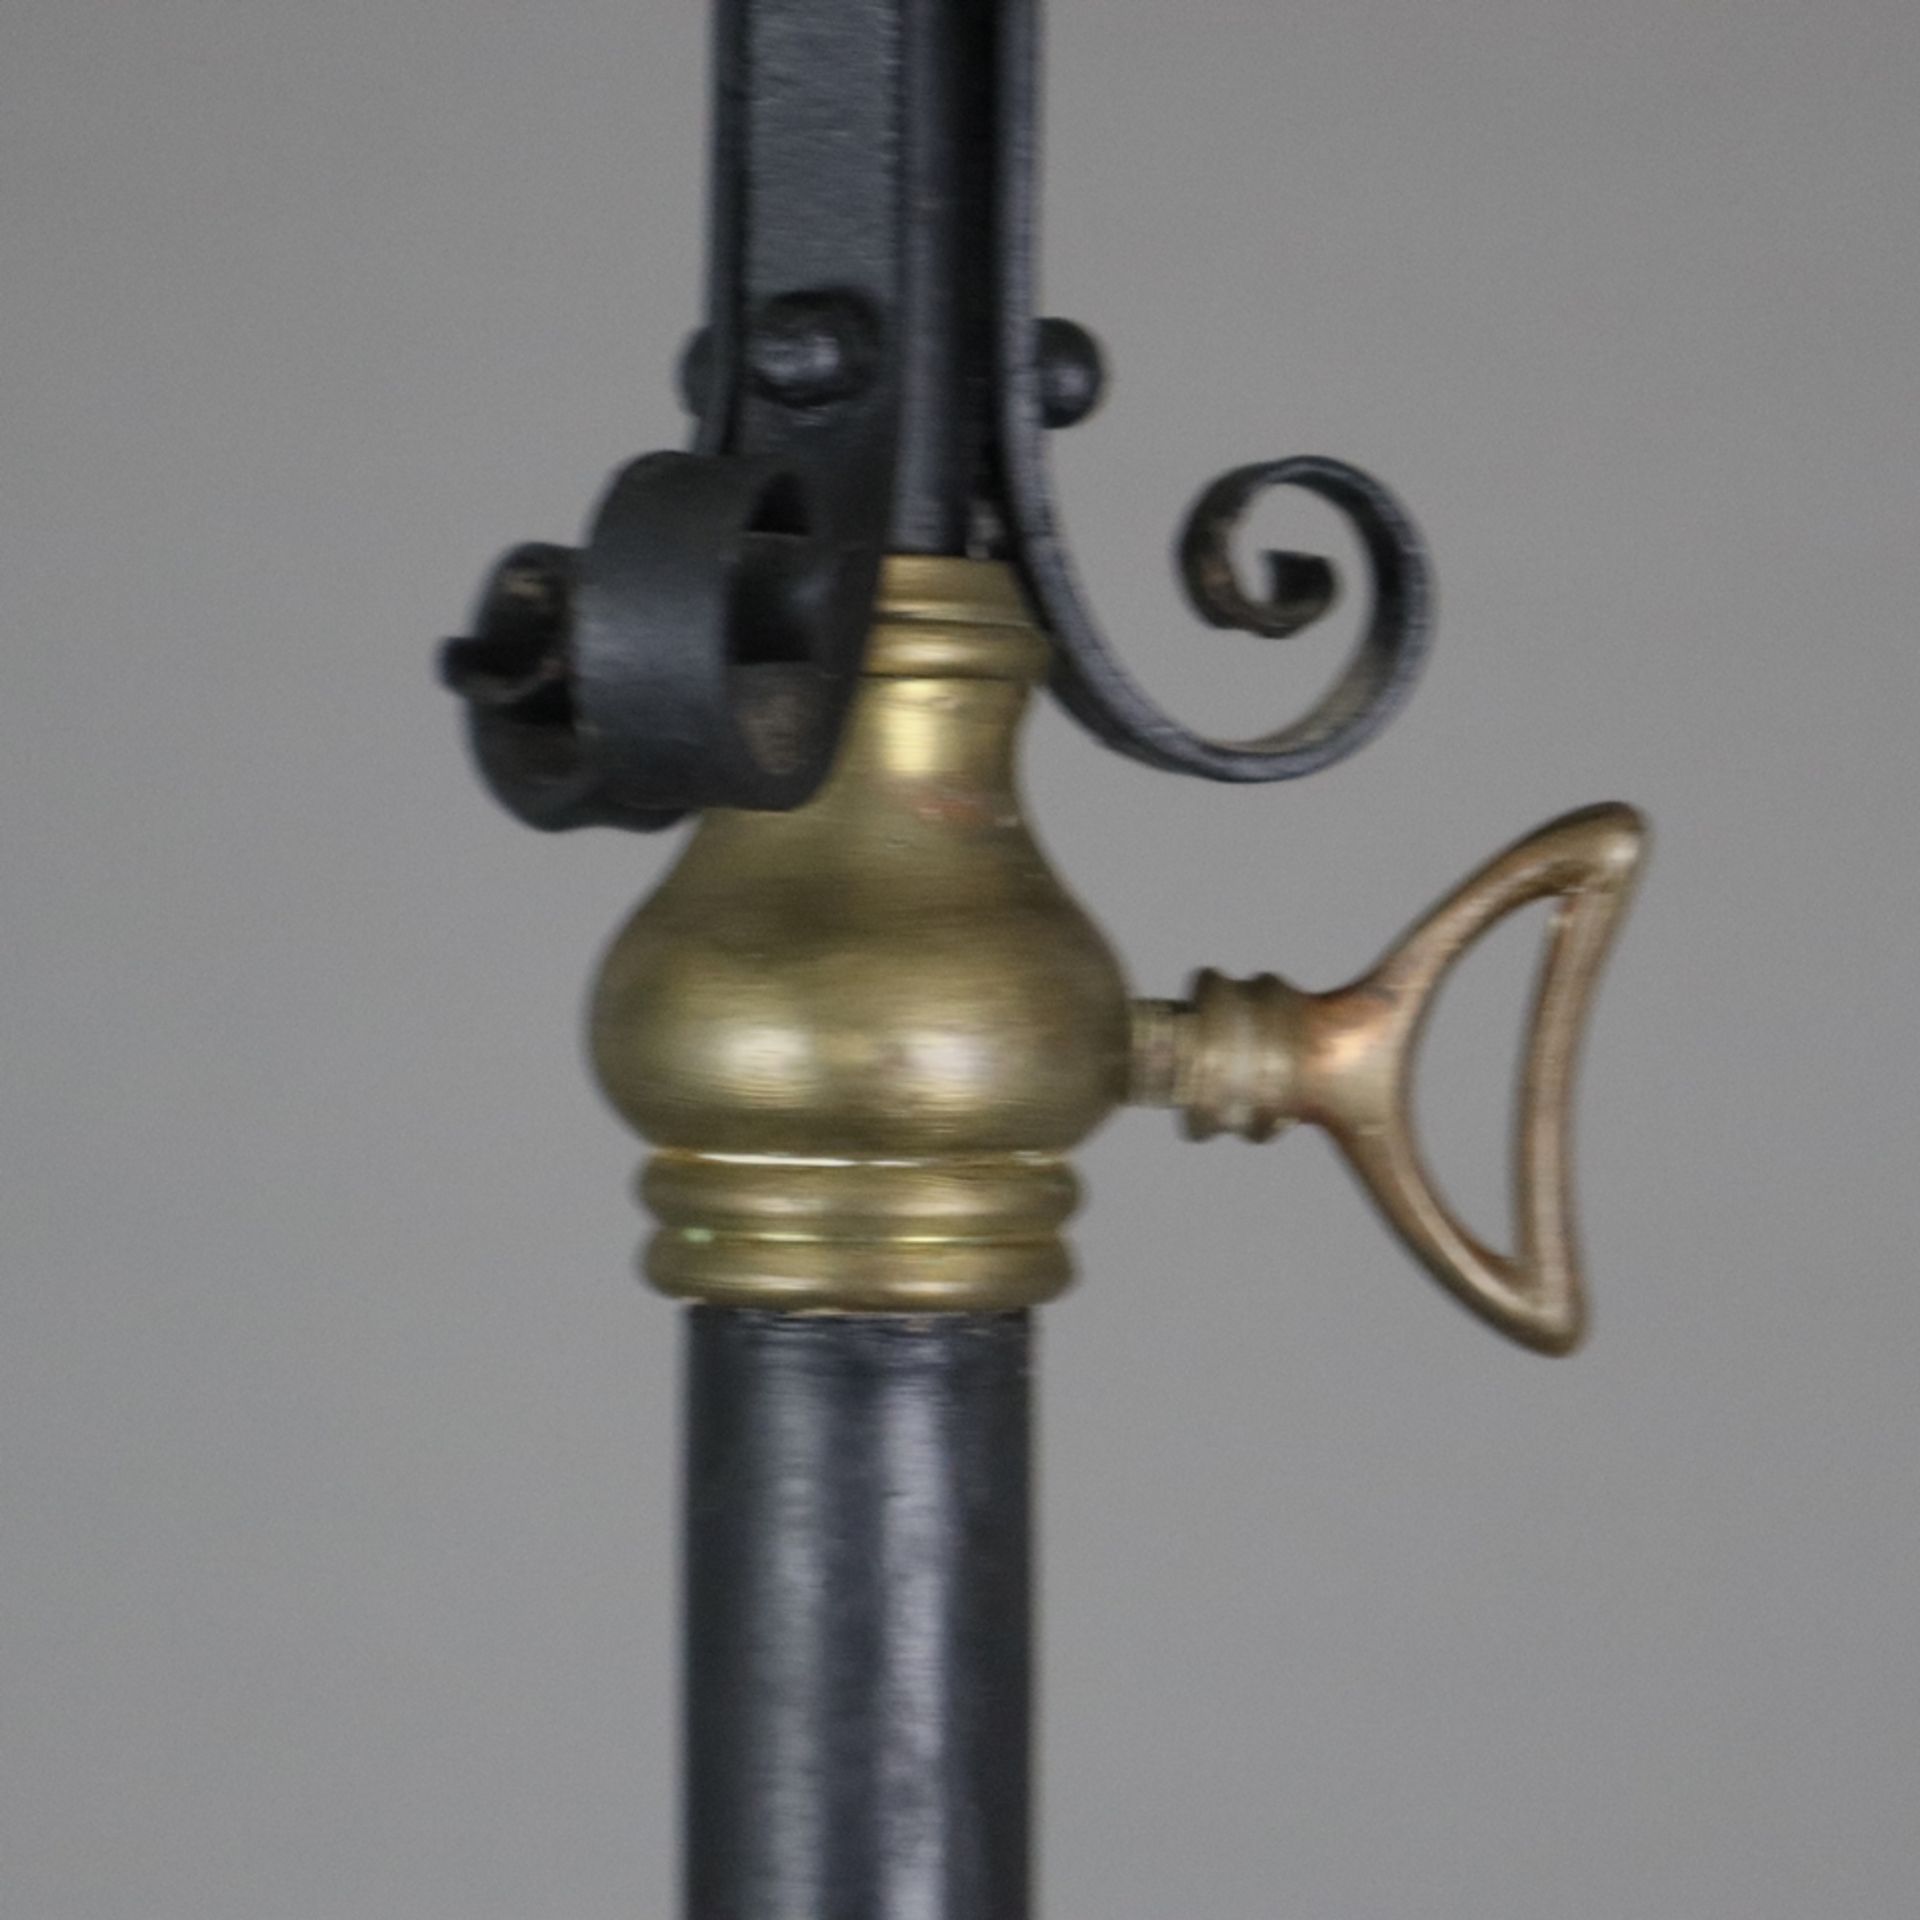 Stehlampe - Ende 19. Jh. / um 1900, Kunstschmiedeeisen-Gestell mit Volutendekor, geschwärzt, farblo - Bild 5 aus 10